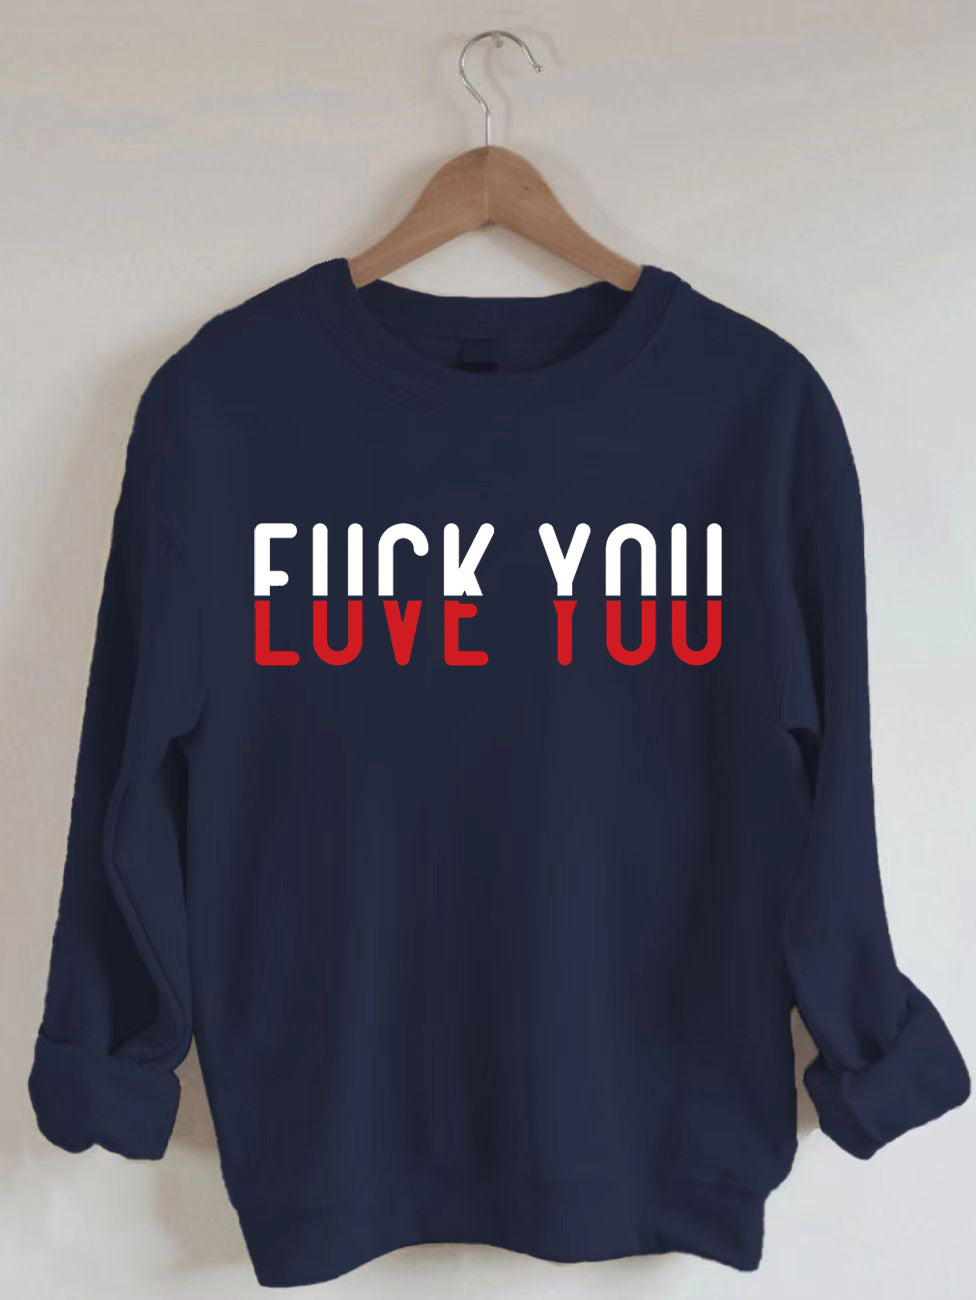 Love You Sweatshirt